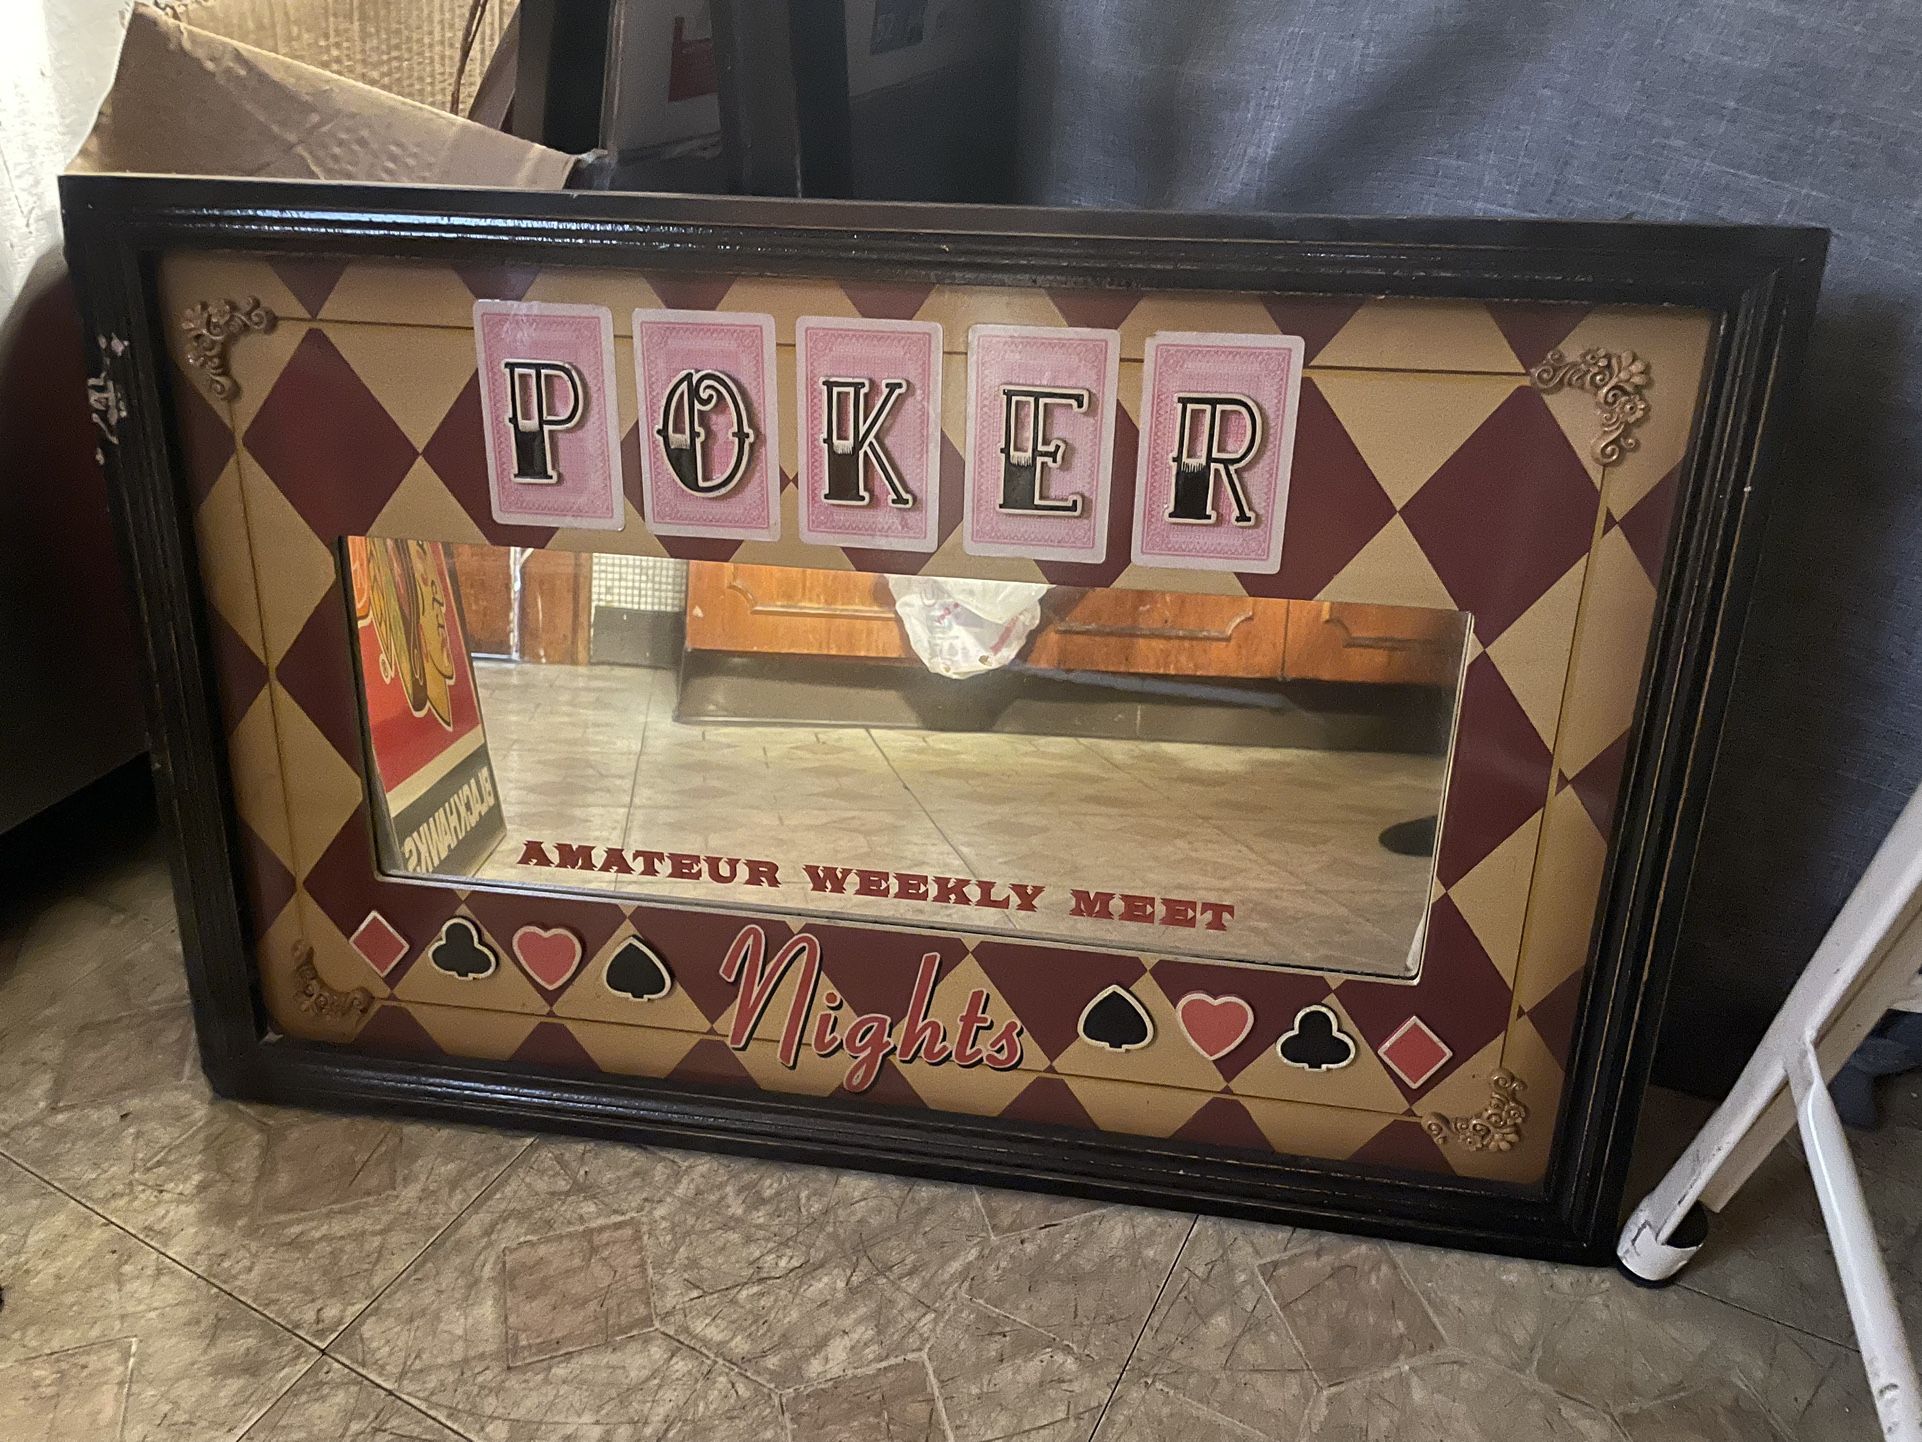 Poker sign, Picturer Frame